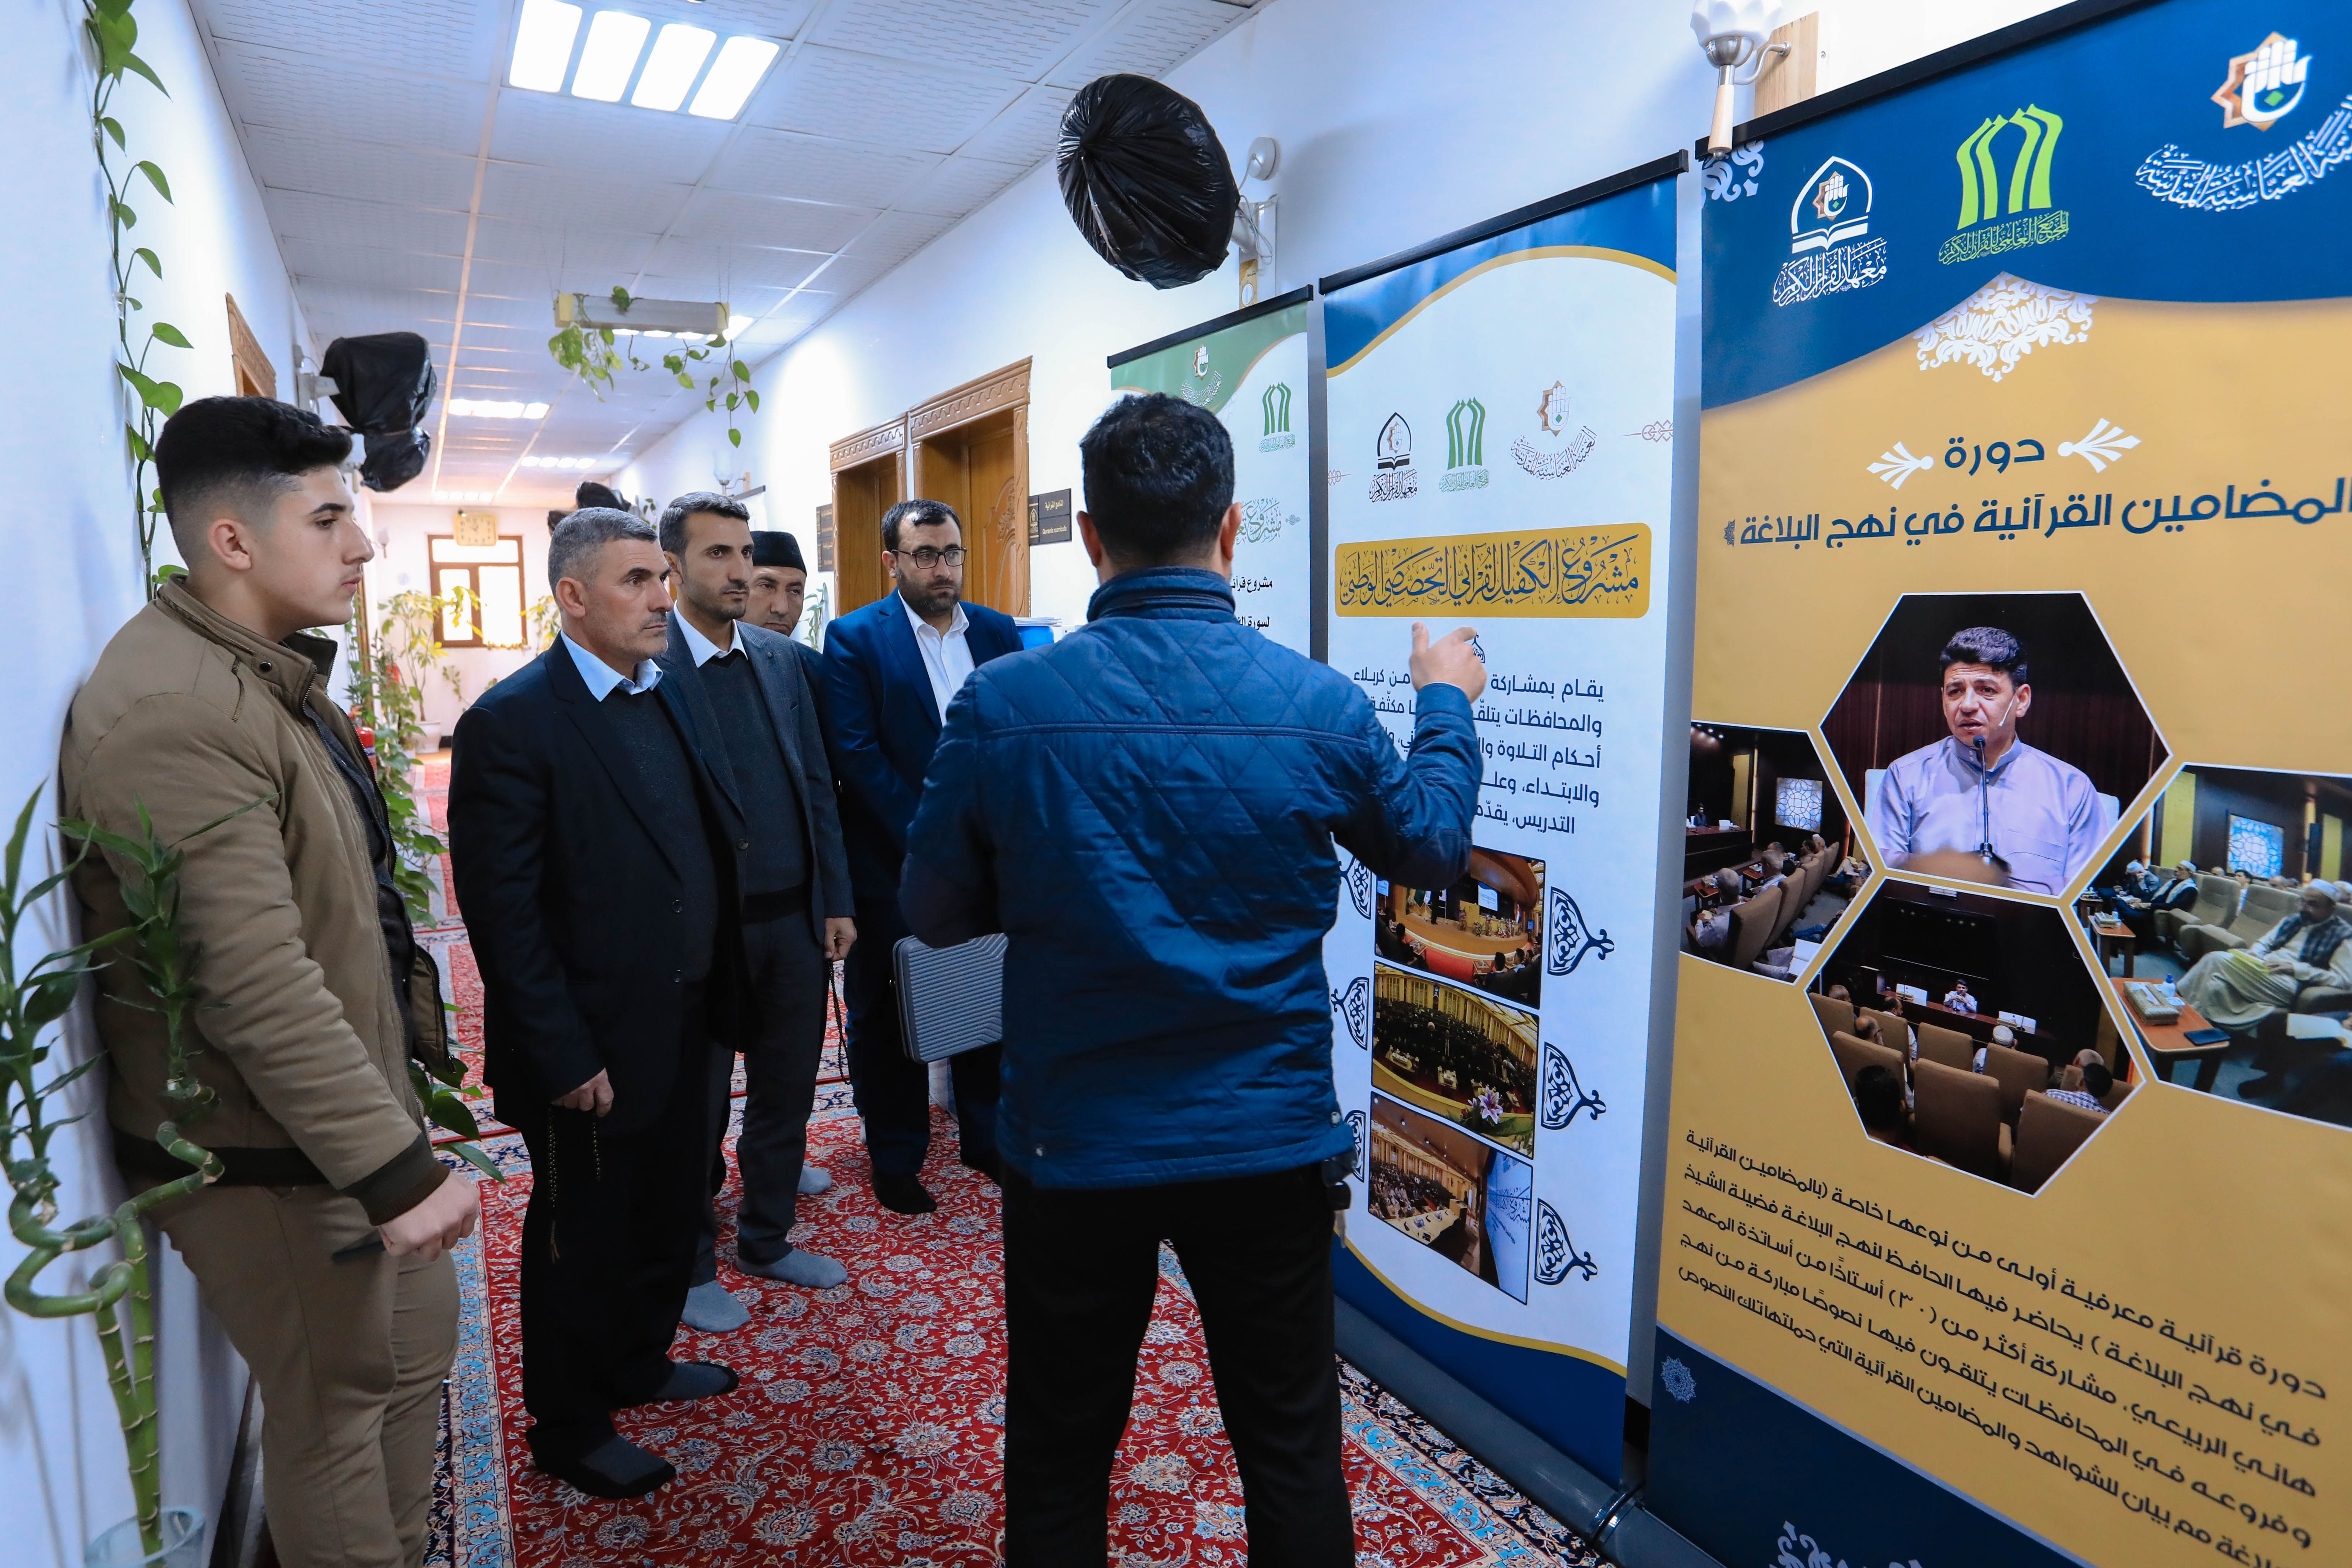 رابطة القرآنيين في الموصل:  مشاريع معهد القرآن الكريم تجعلك تشعر بالفخر والاعتزاز والانتماء للقرآن الكريم